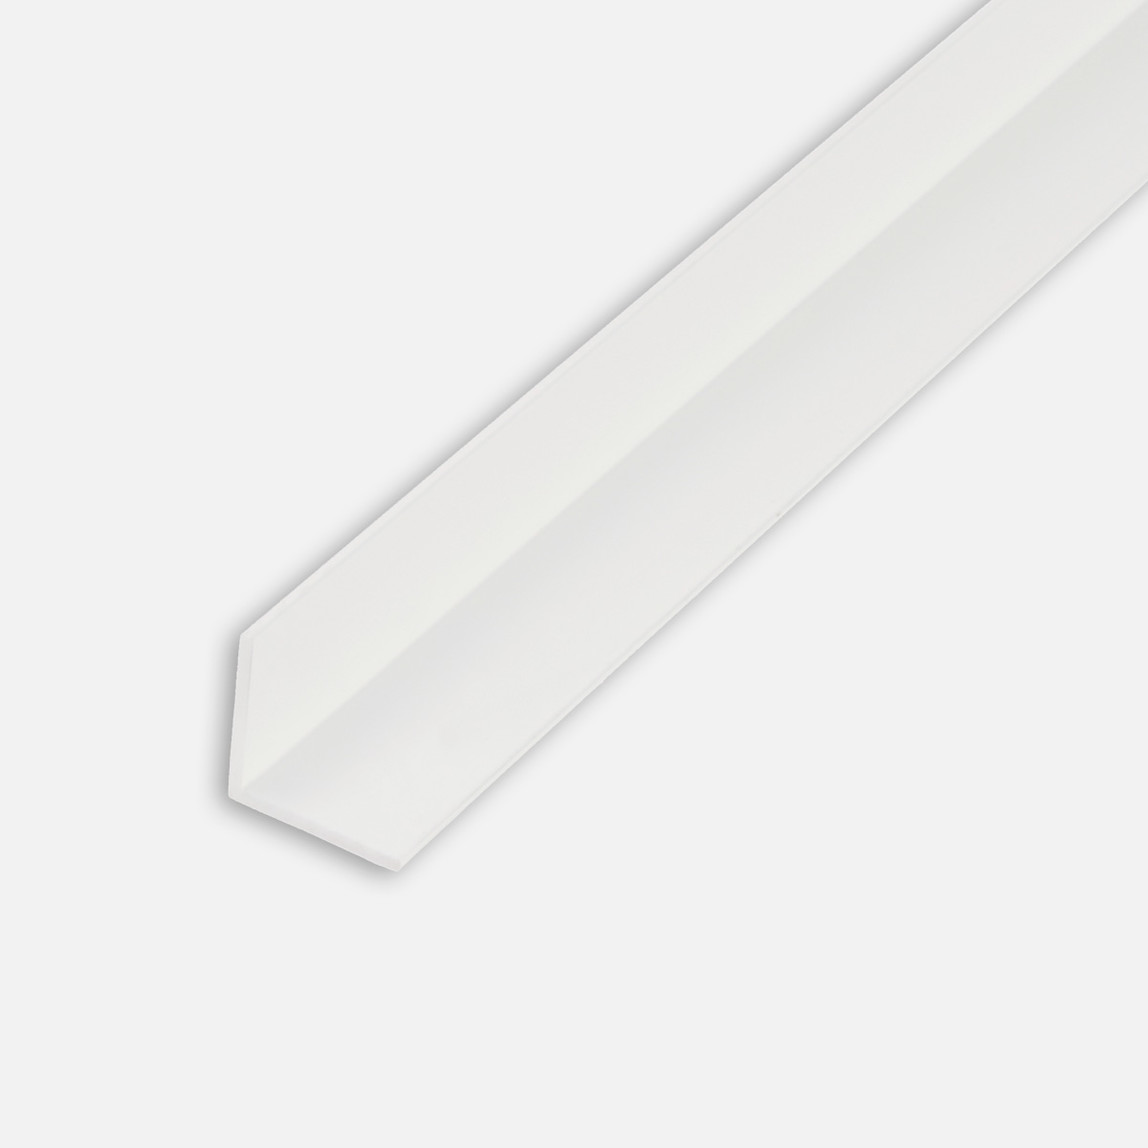    Kantoflex Açılı Profil Beyaz 